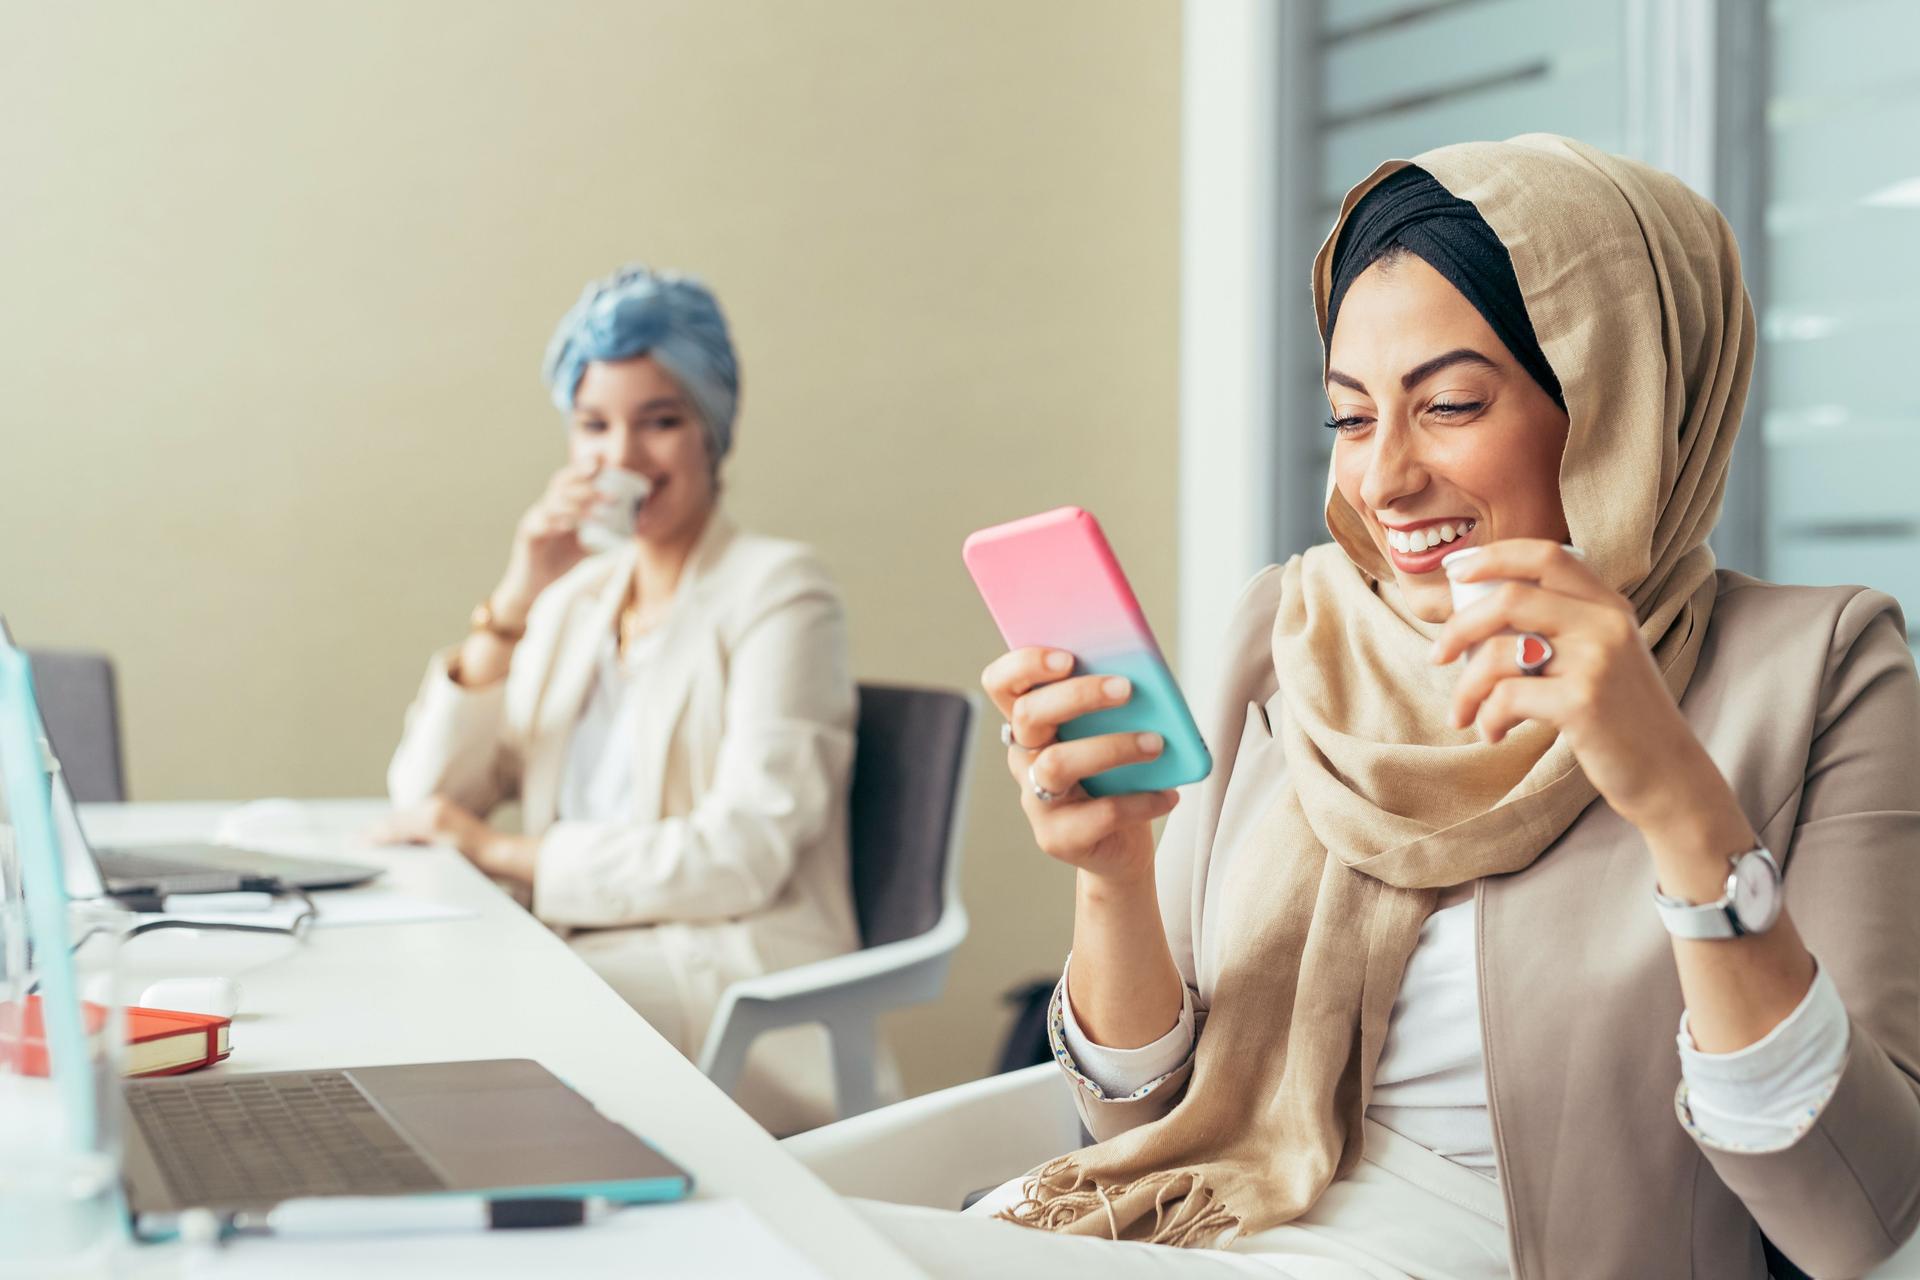 Frau mit Hijab blickt im Büro lachend auf ihr Smartphone.